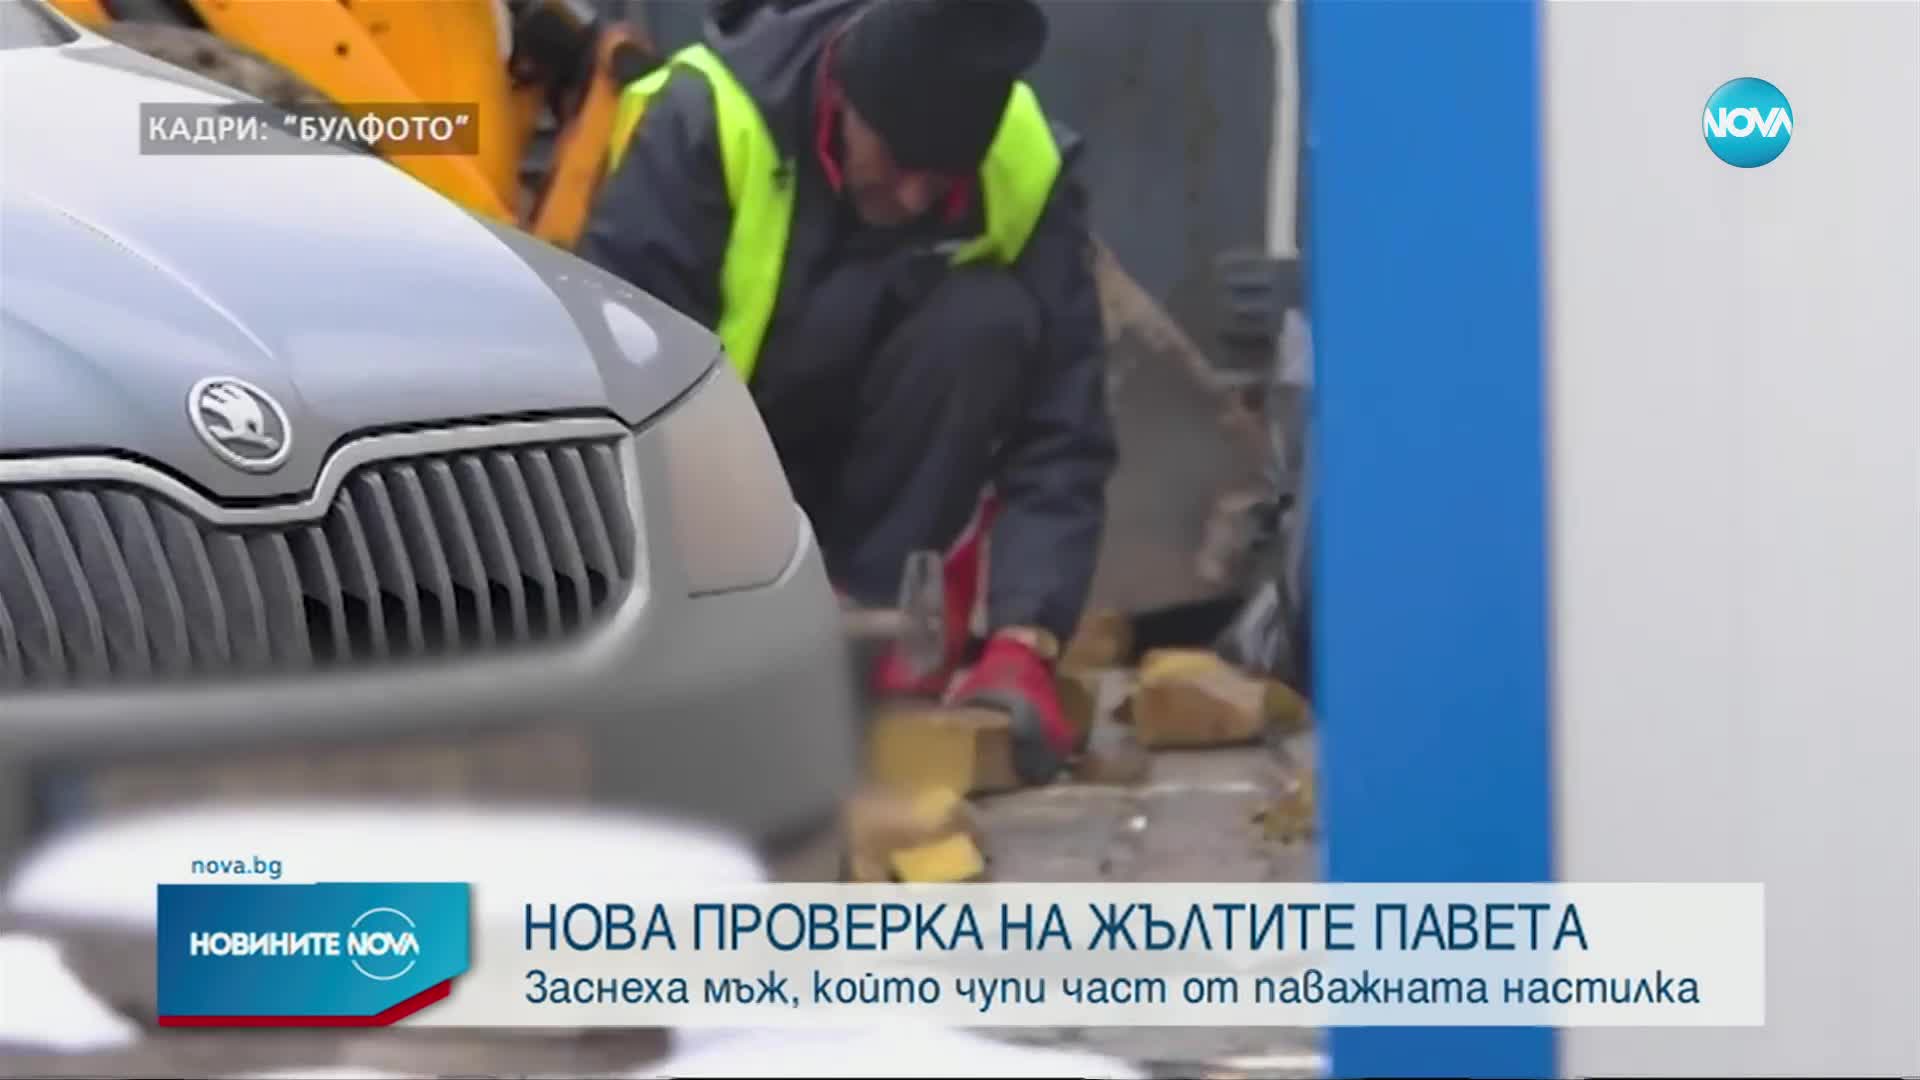 Започна проверка по случая с повредени жълти павета от работник в София